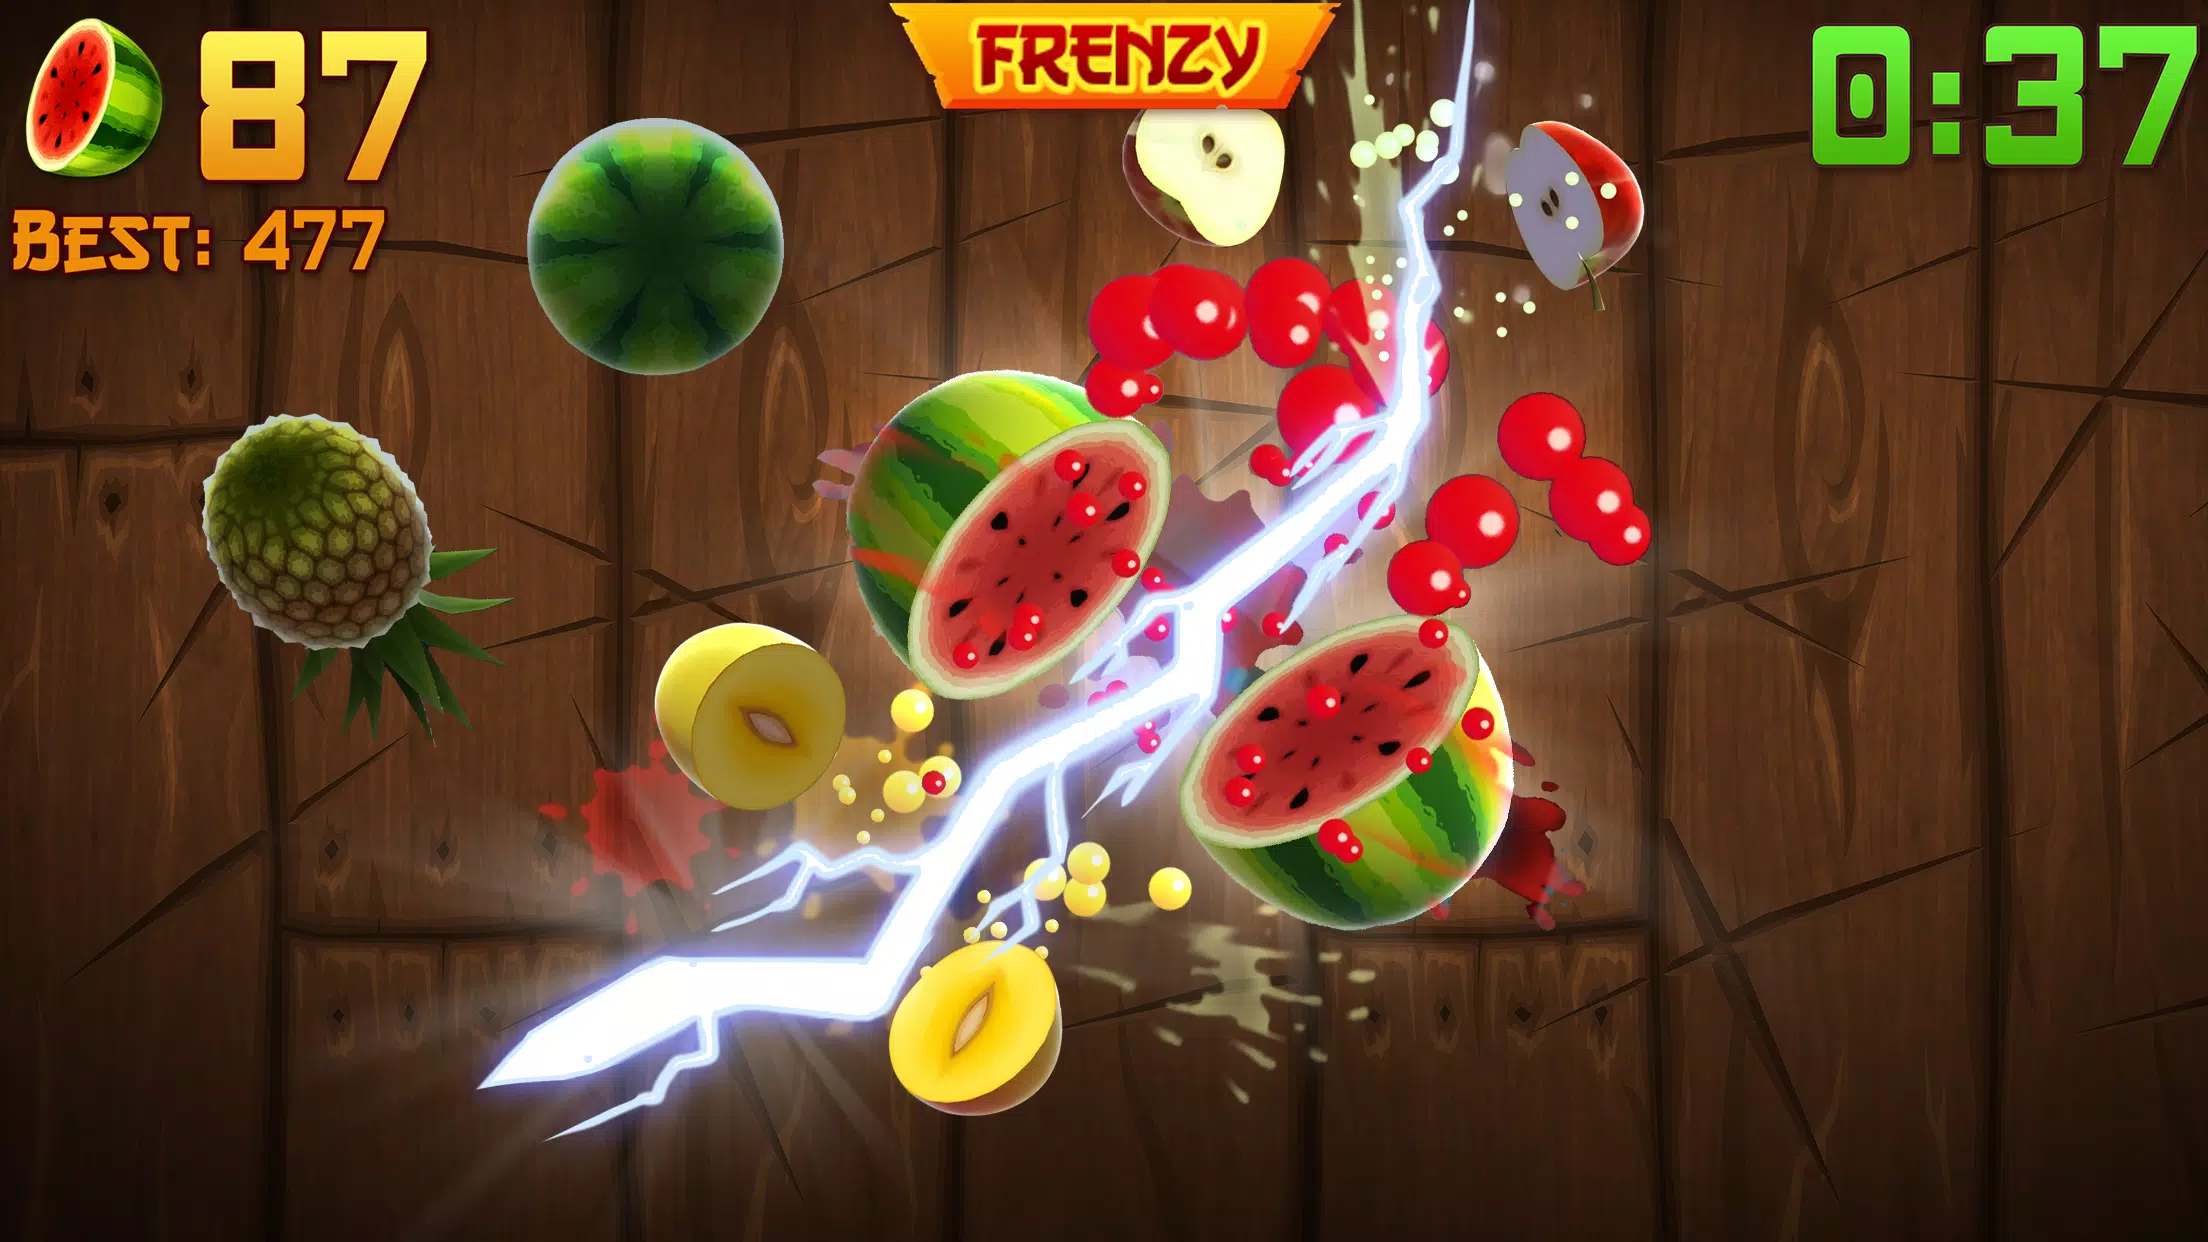 Baixar Fruit Ninja 3.48 Android - Download APK Grátis